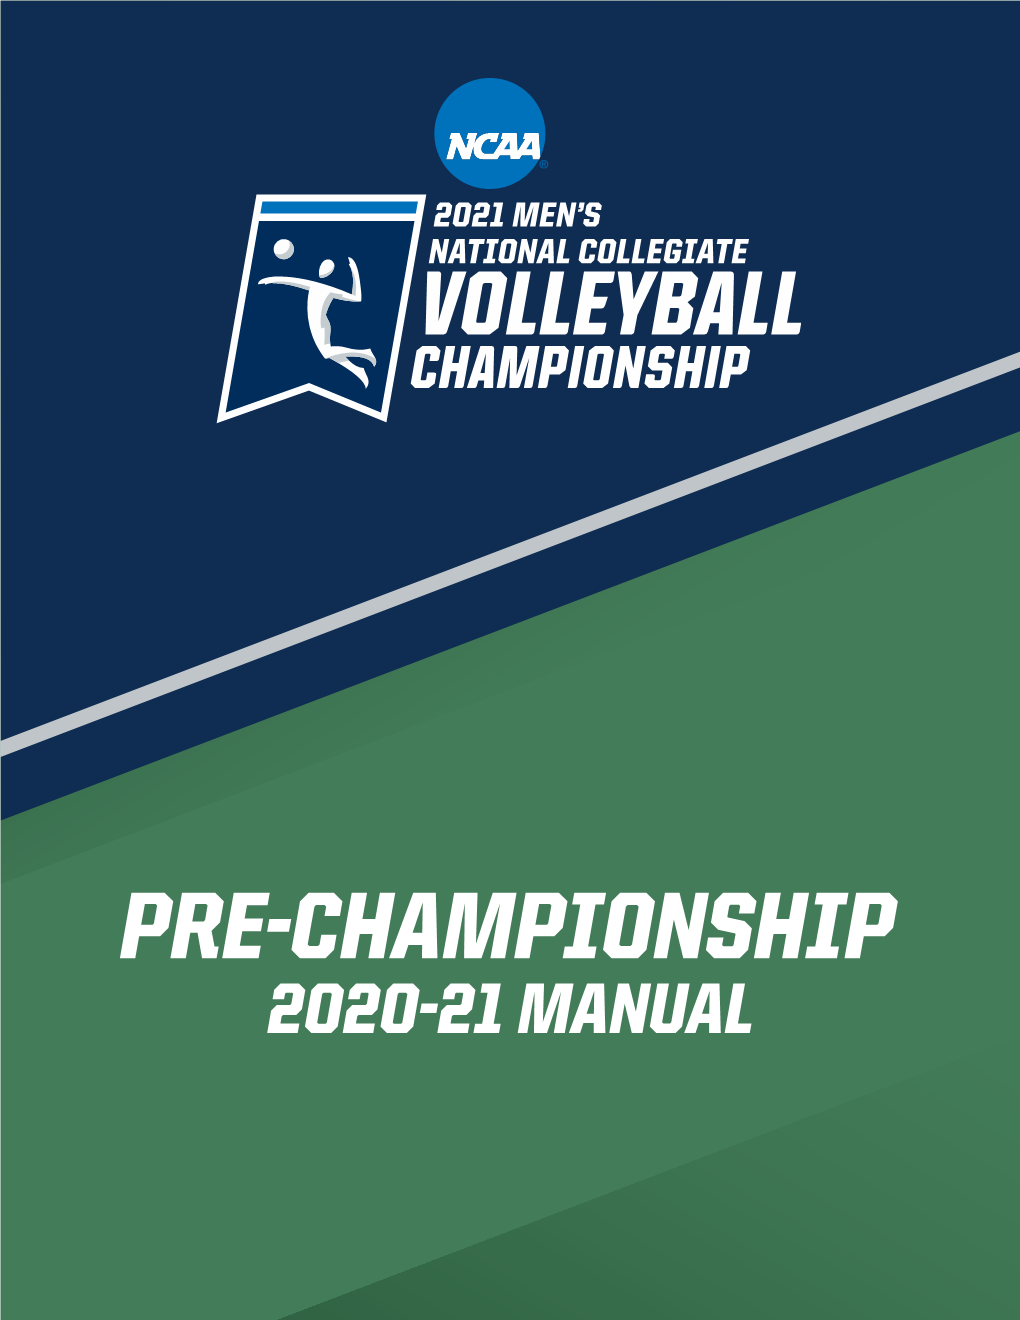 2020-21 Pre-Championship Manual